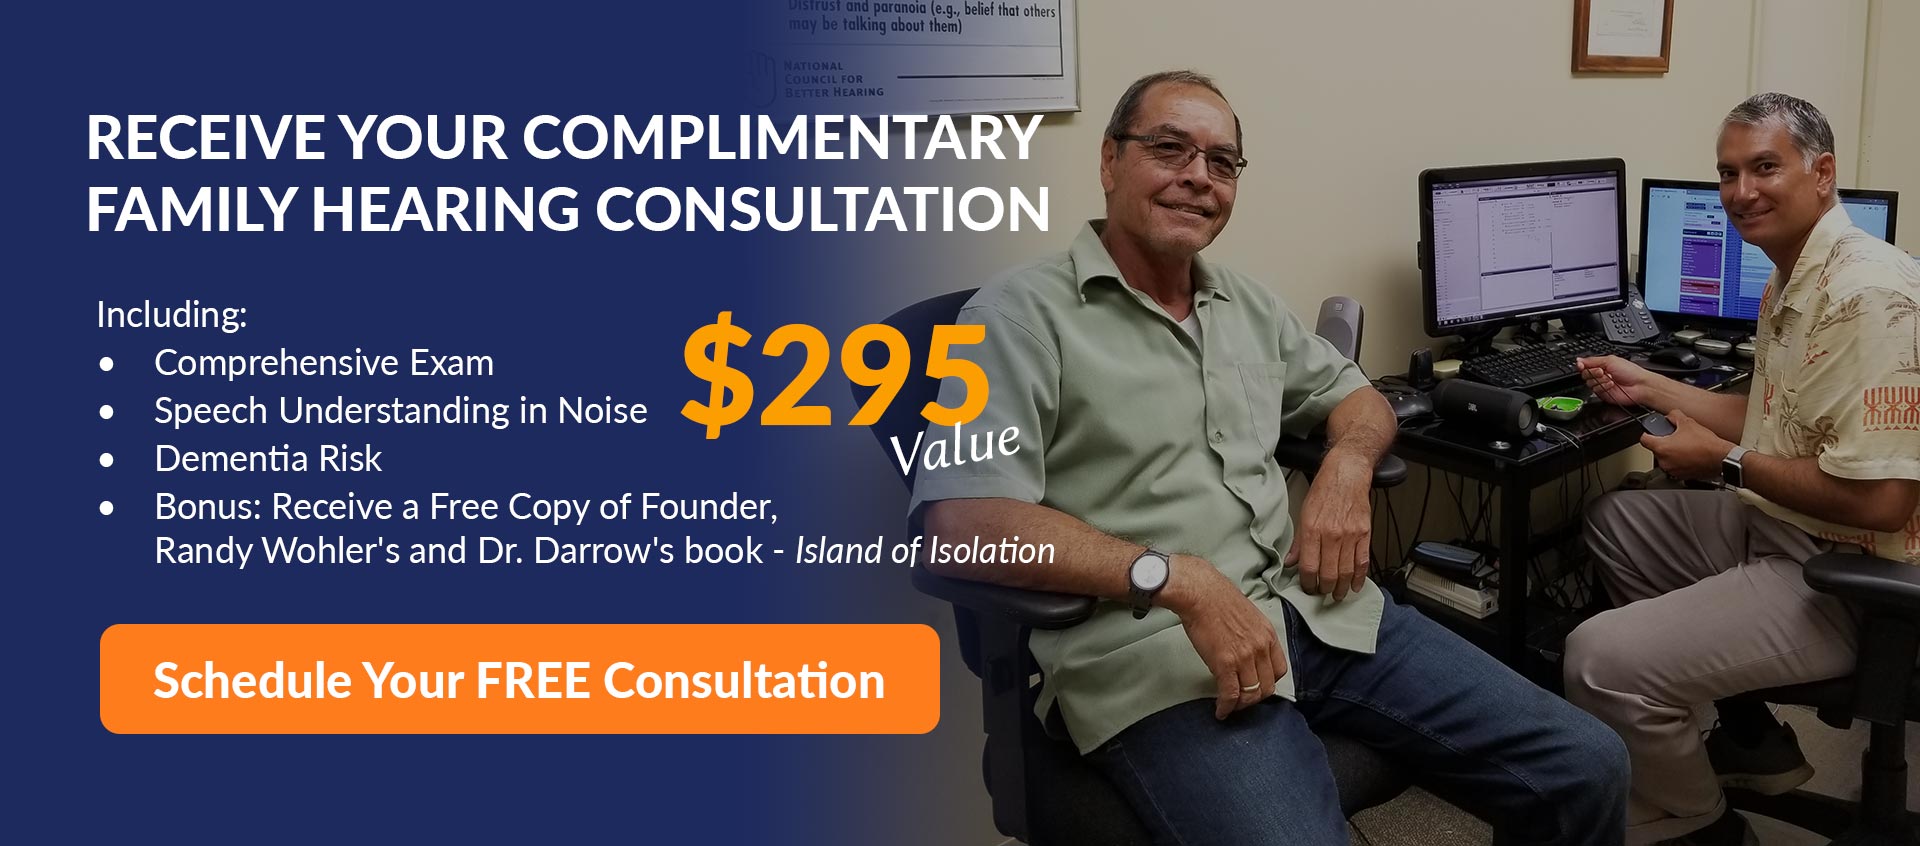 free family hearing consultation